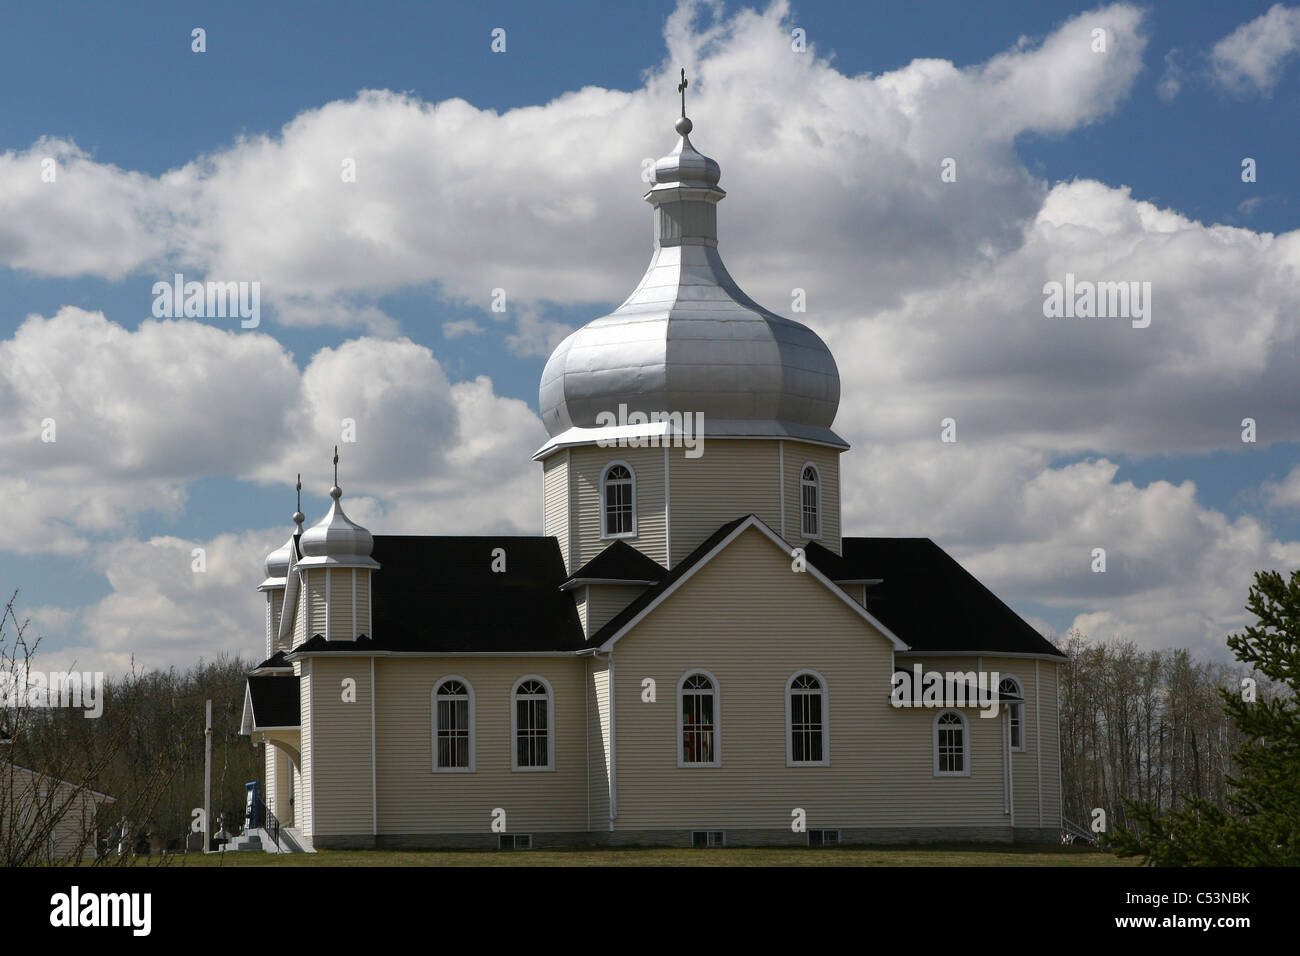 St. Marien ukrainische katholische Kirche, Waugh, Alberta, Kanada, Land, Architektur Kuppel Kurve kreisförmigen Respekt Kirchensaal Stockfoto